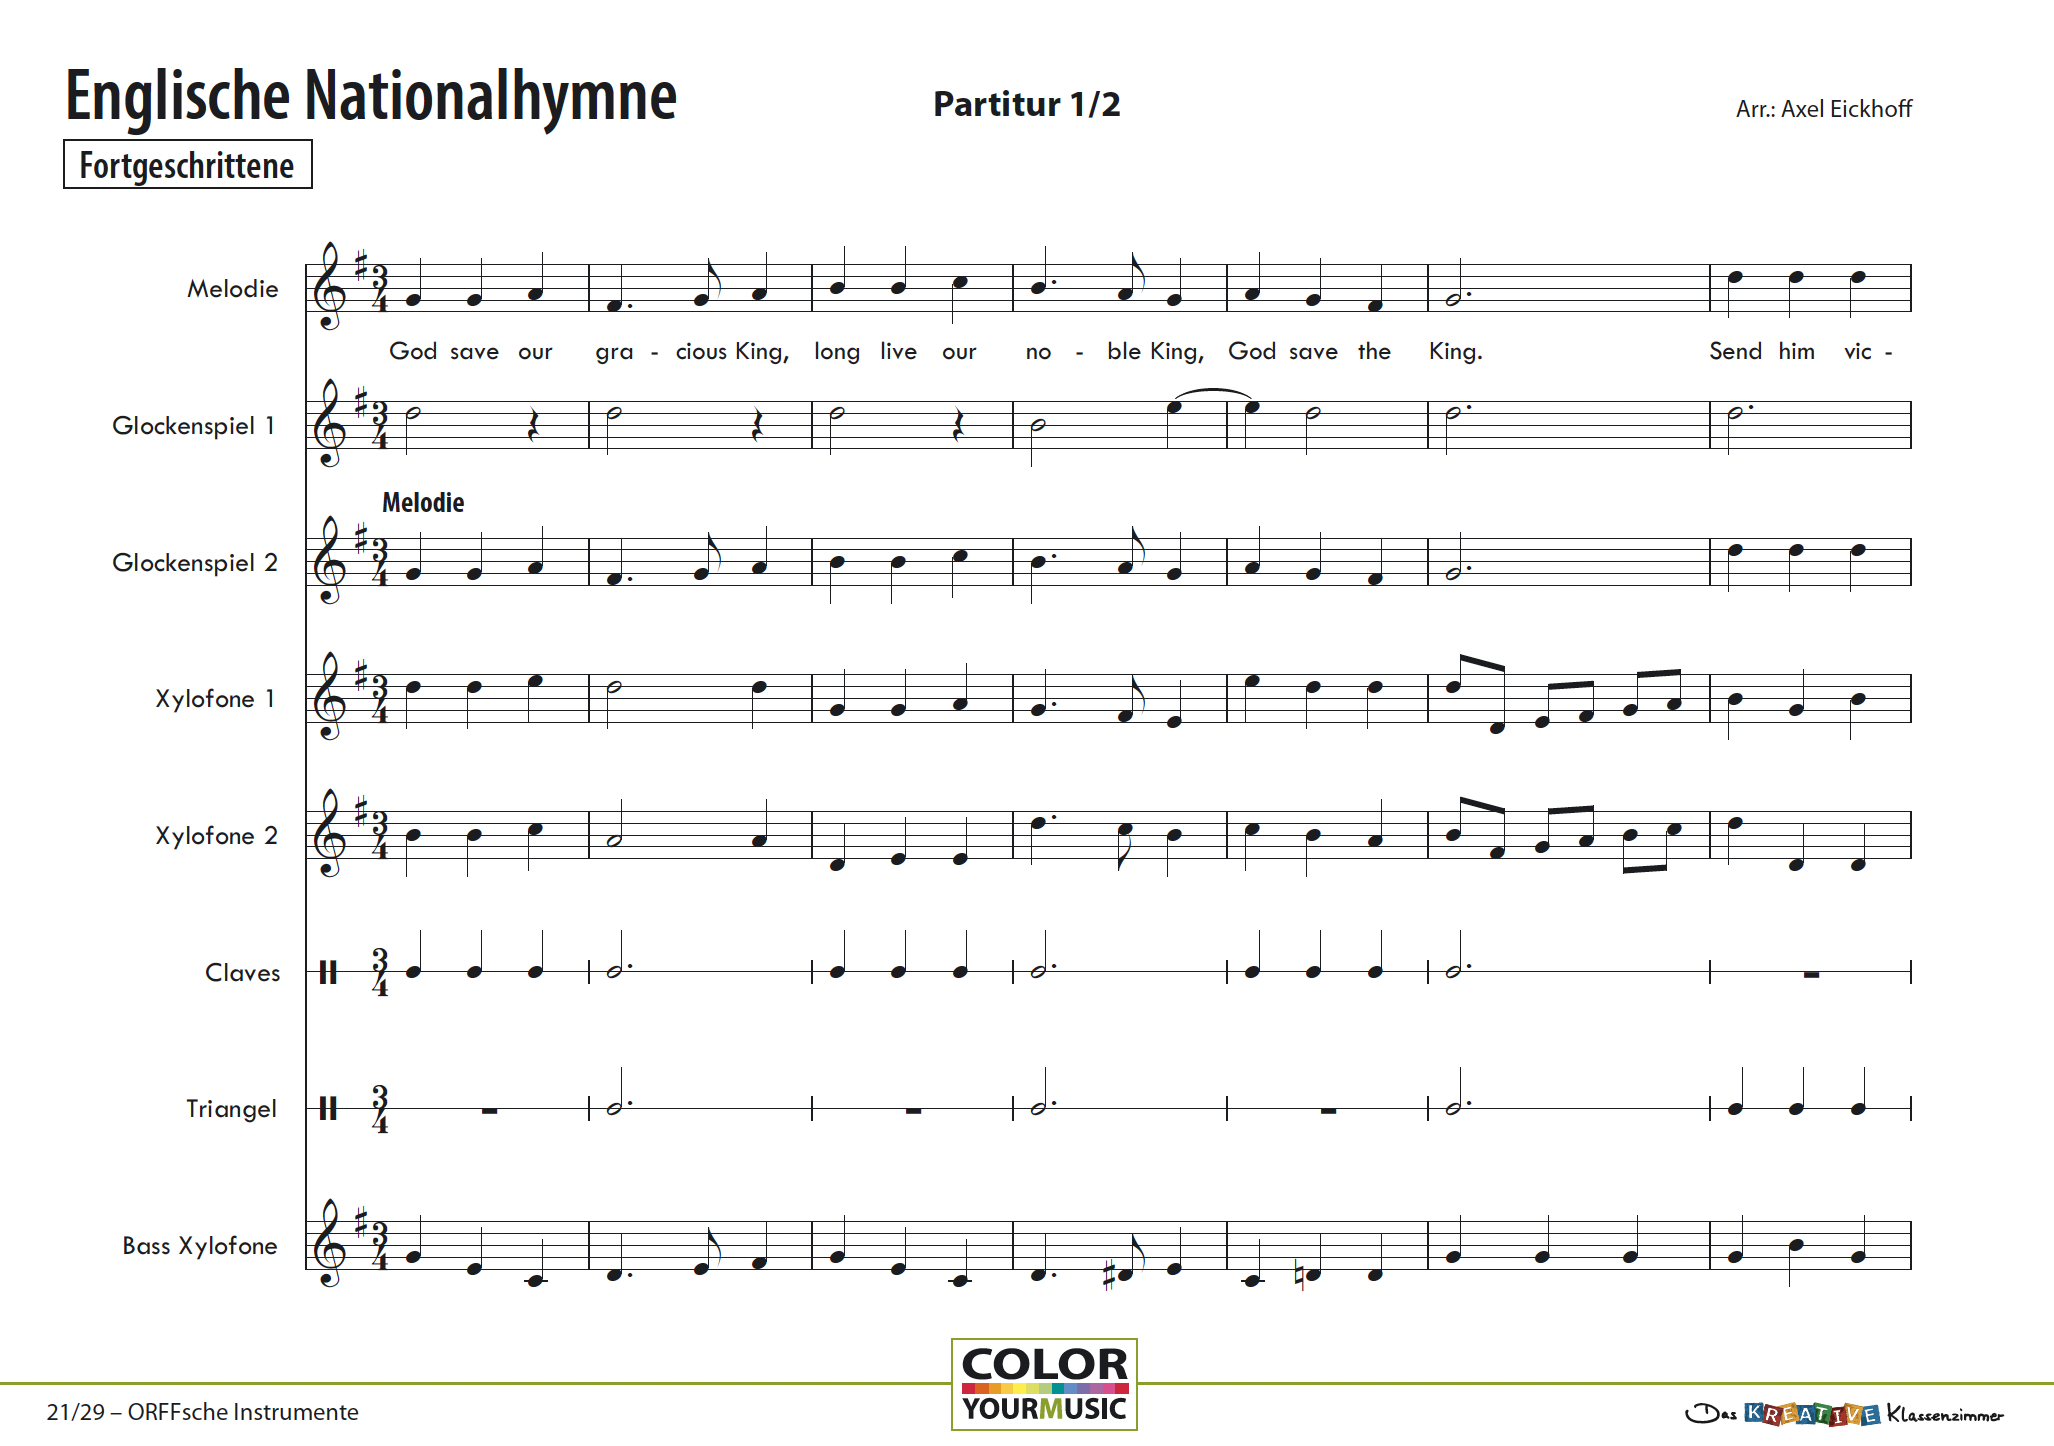 Englische Nationalhymne - God save the King/Queen - Orff